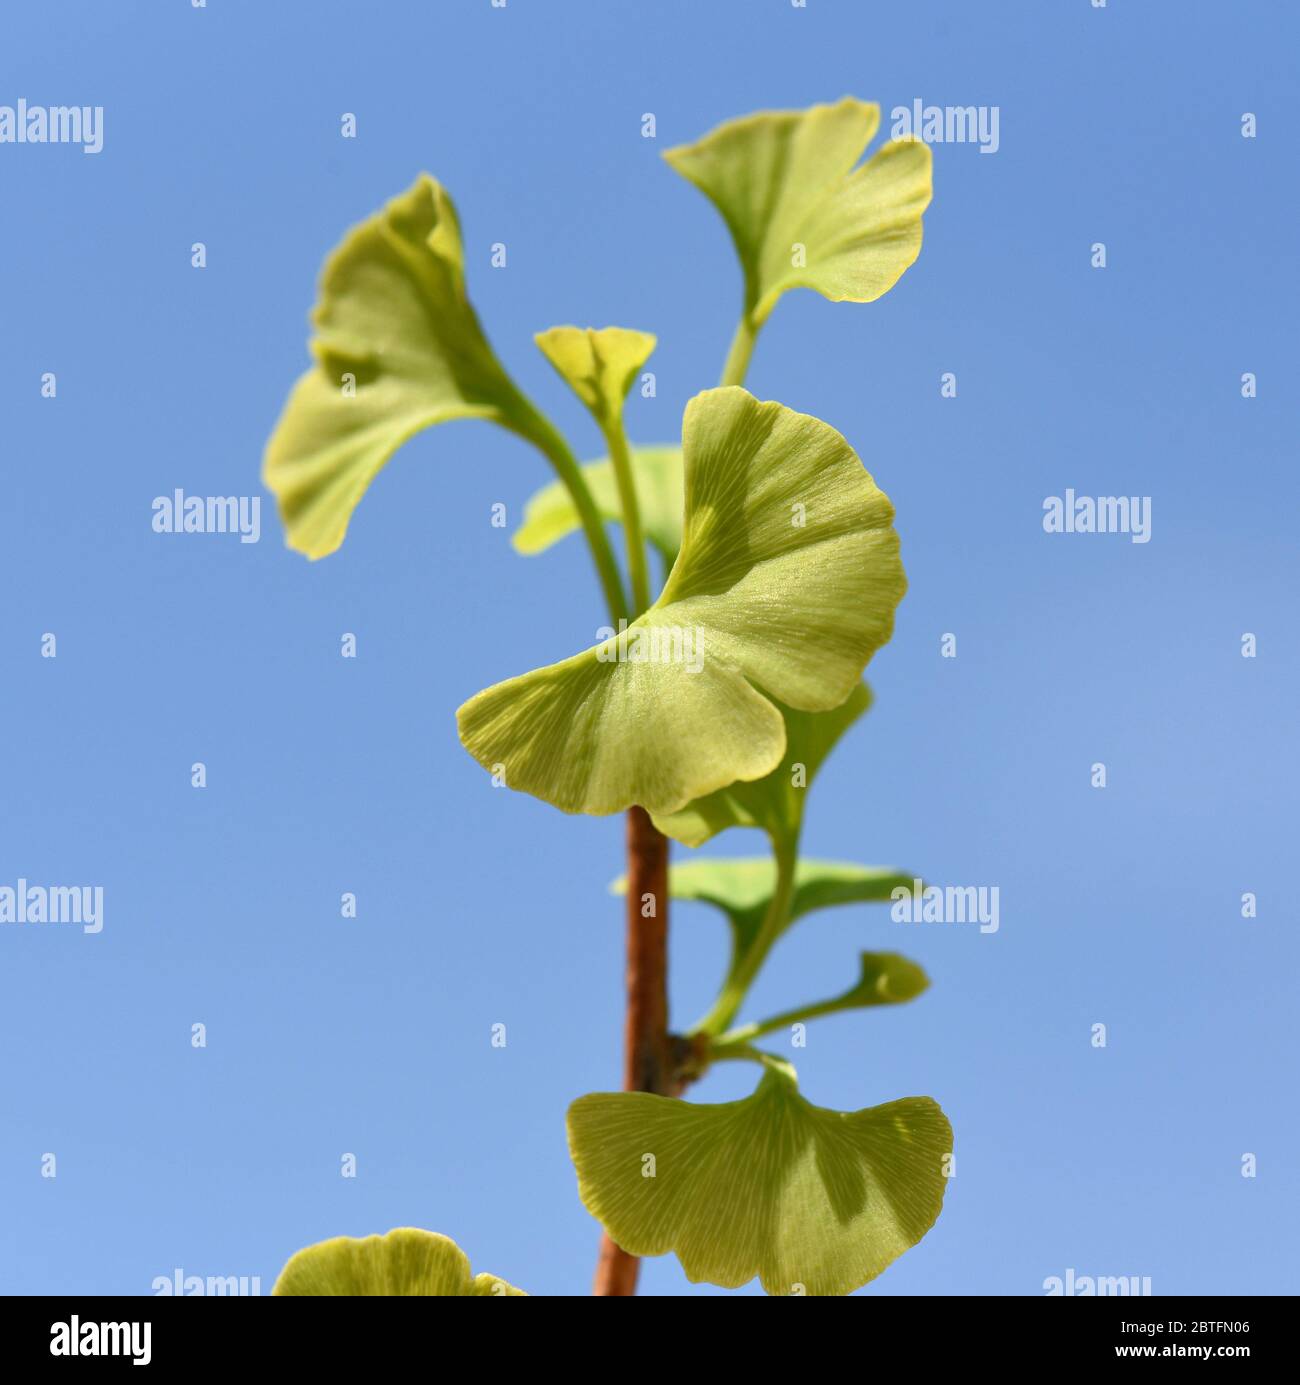 Ginkgo biloba oder Ginko ist eine in China heimische, heute weltweit angepflanzte Baumart. Ginkgo biloba or Ginko is a tree species native to China th Stock Photo